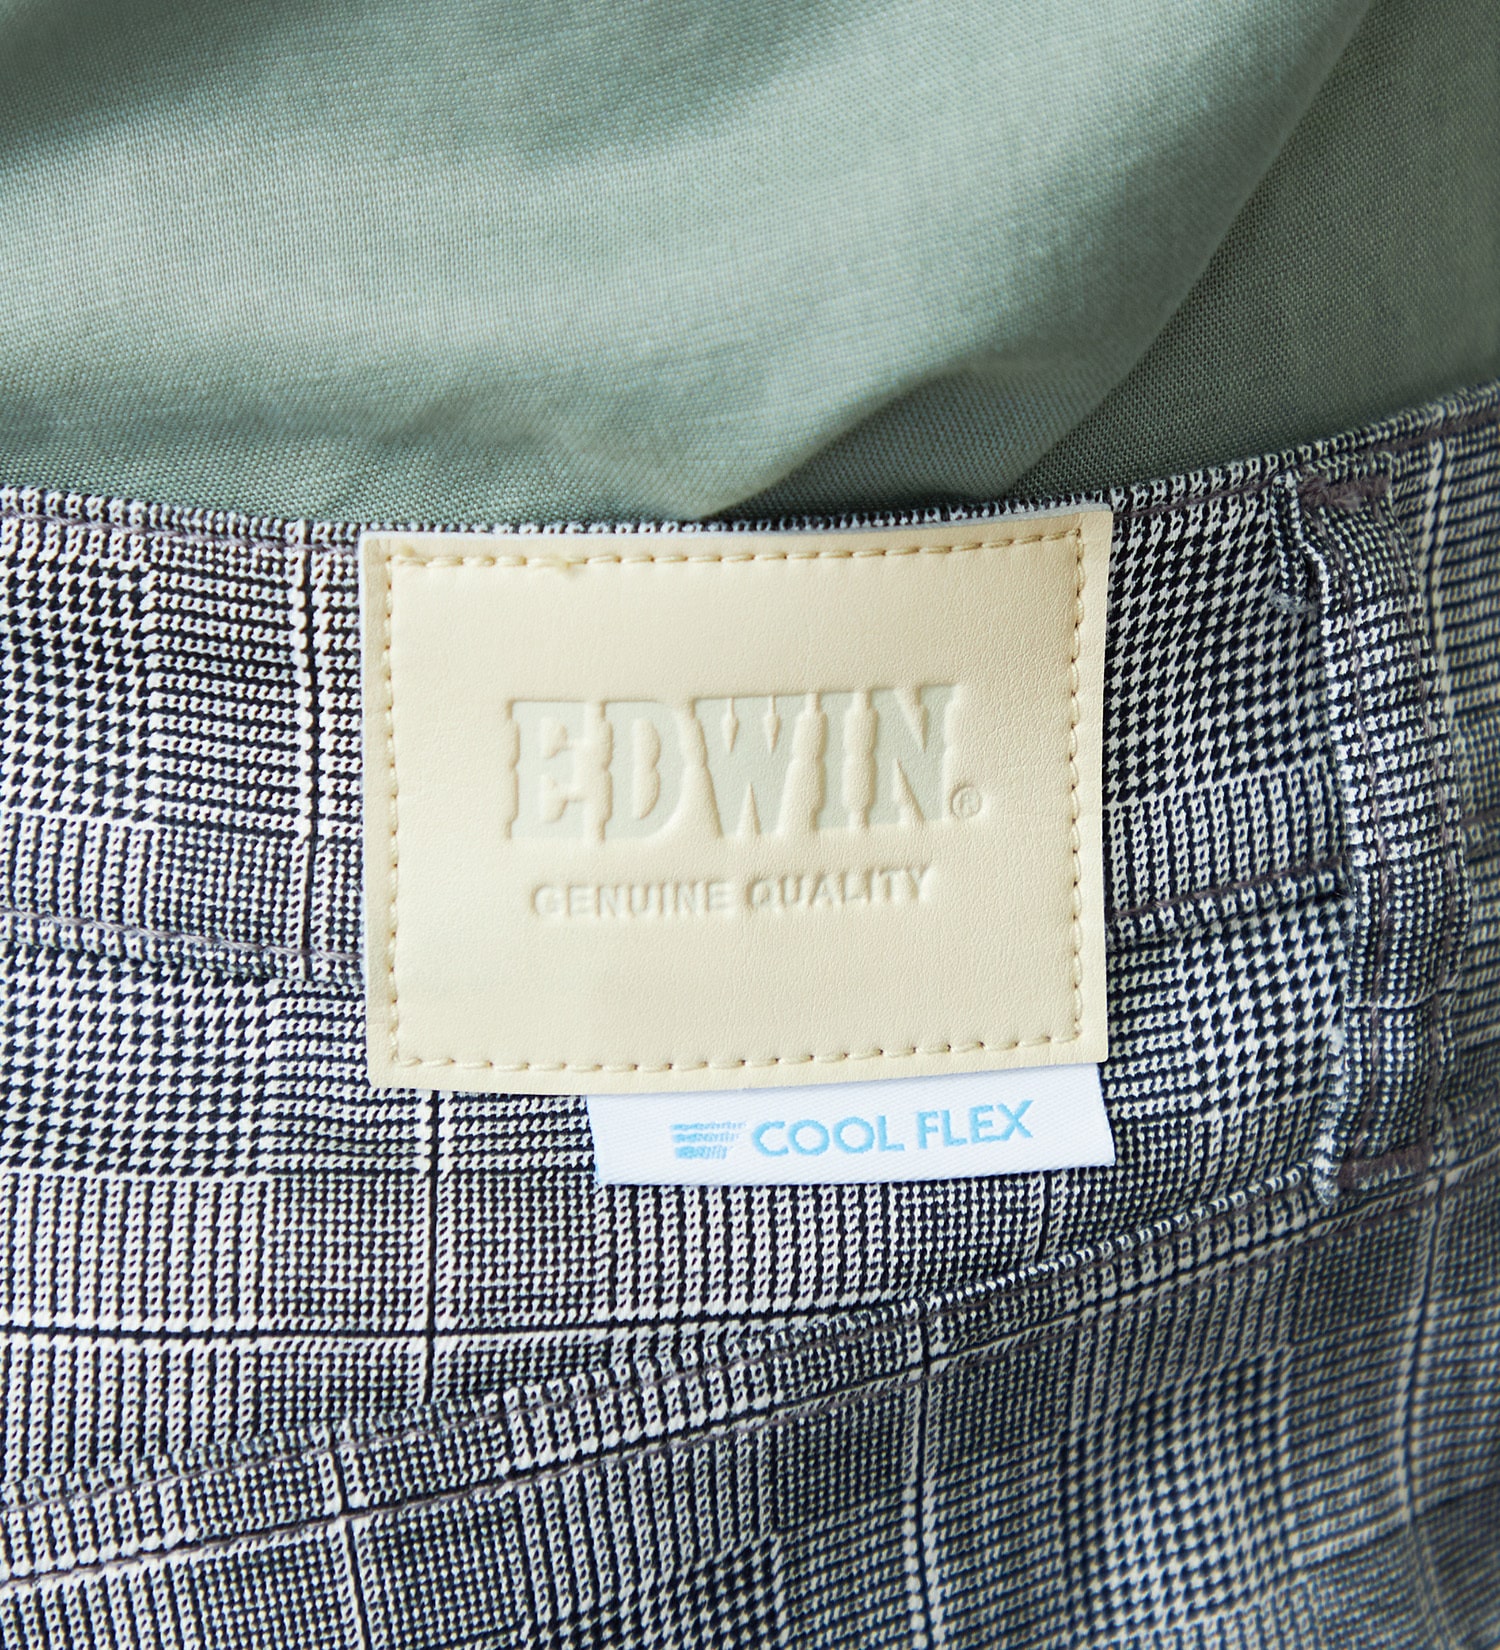 EDWIN(エドウイン)の【GW SALE】【涼】EDWIN COOLFLEX 二重織メッシュ構造 レギュラーストレートパンツ 【ドライタッチ/吸汗速乾】|パンツ/パンツ/メンズ|チェック1